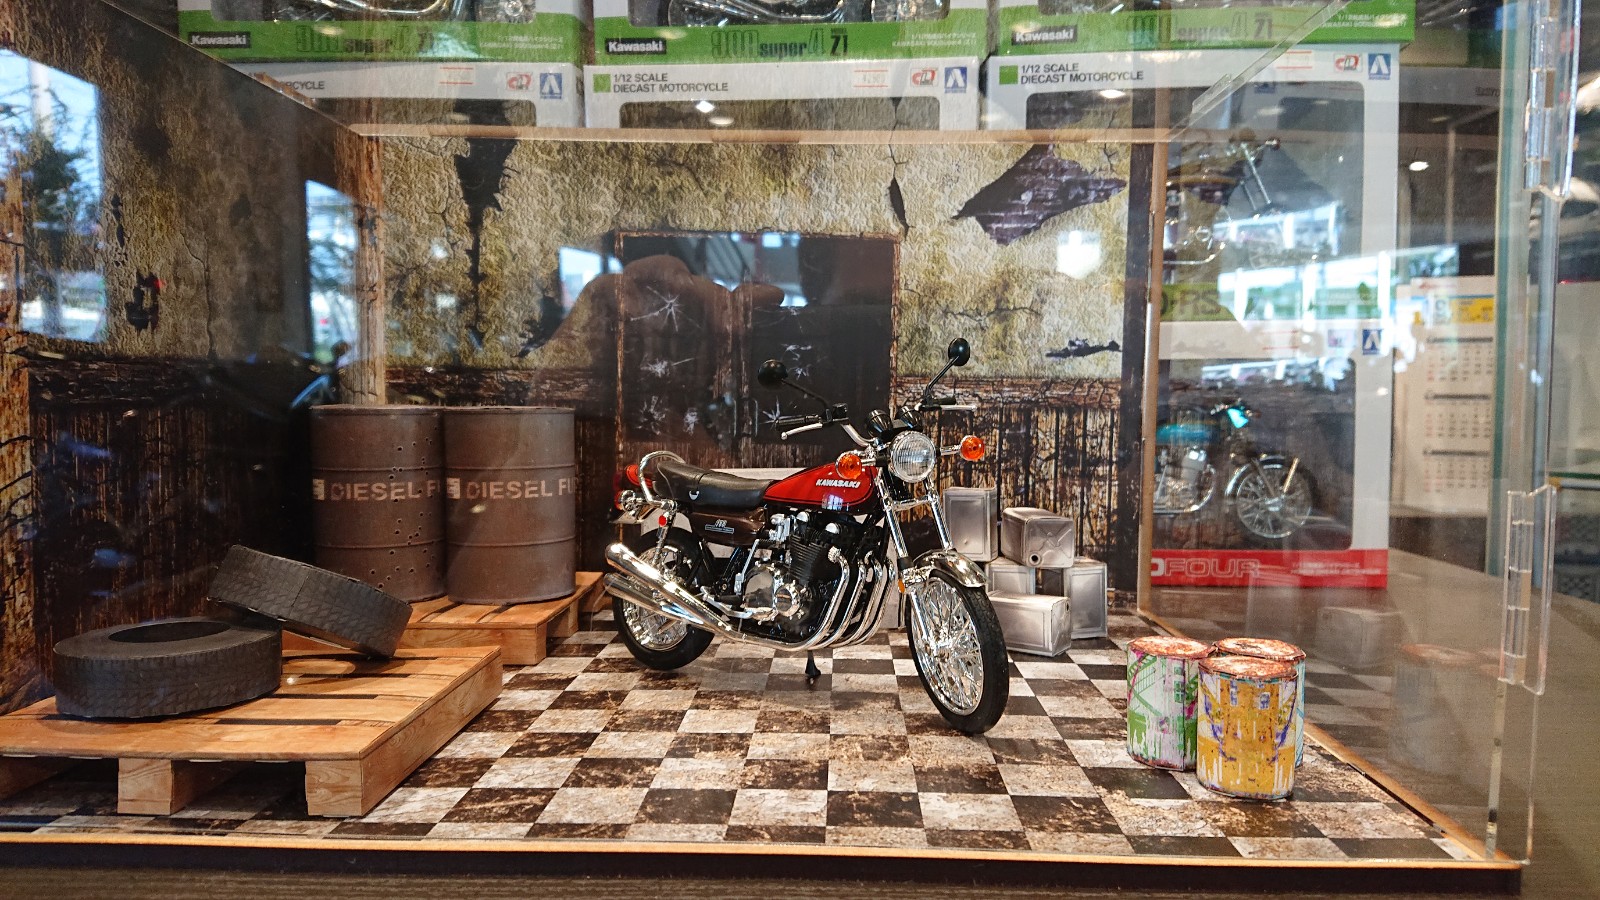 ジオラマ展示始めました 最新情報 U Media ユーメディア 中古バイク 新車バイク探しの決定版 神奈川 東京でバイク 探すならユーメディア